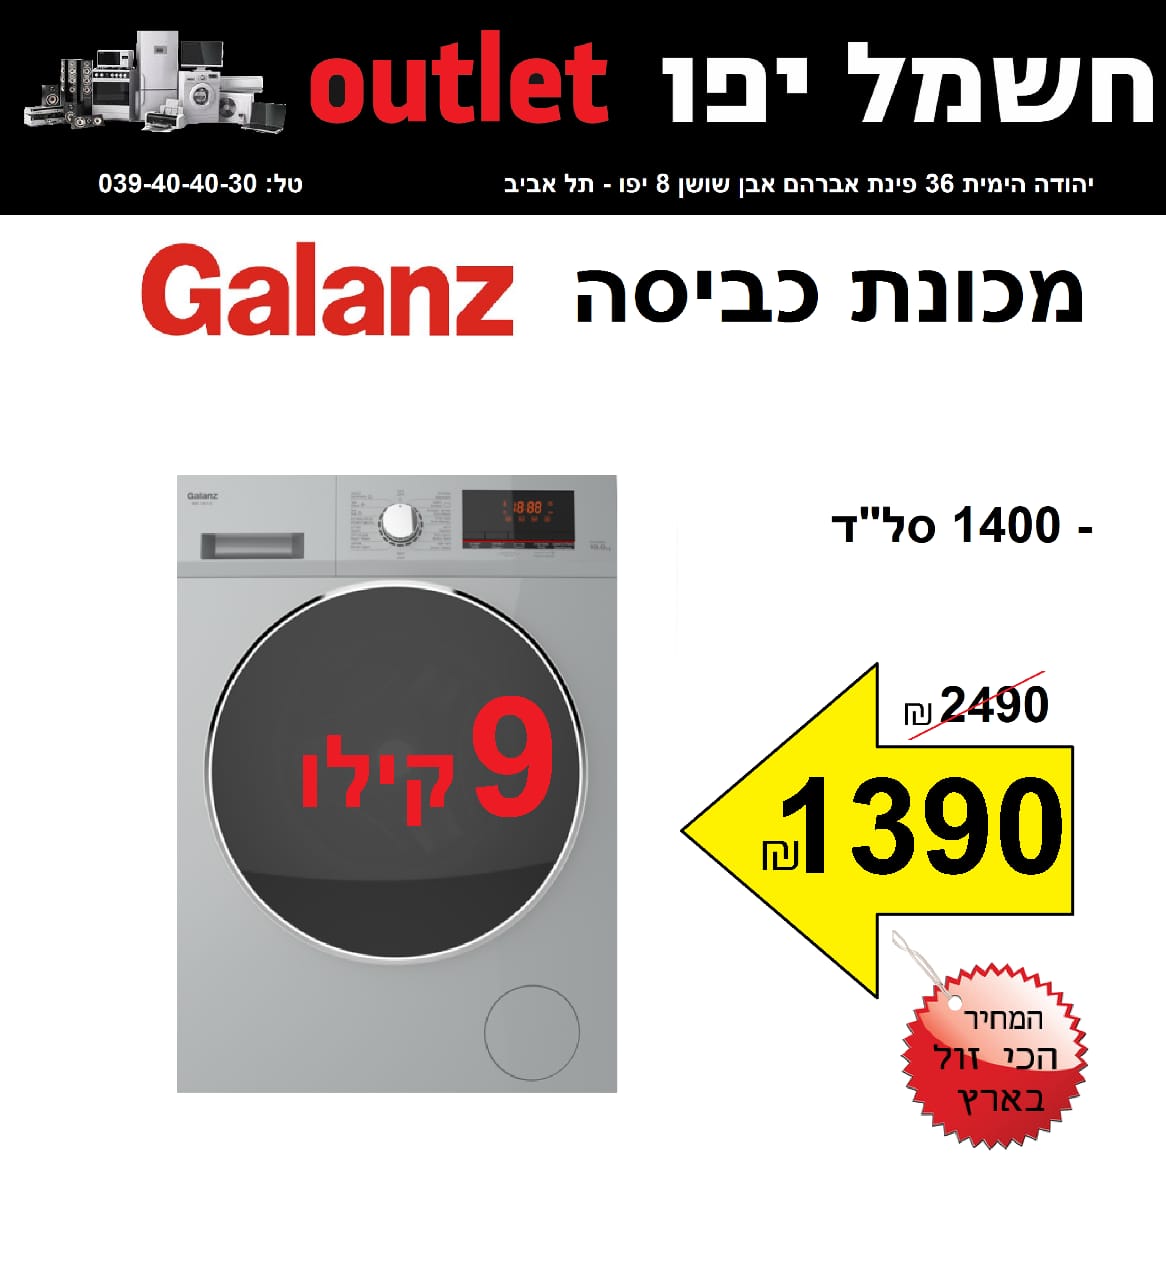  حملة تخفيضات جديدة على الأسعار في صالة كهرباء يافا OUTLET 